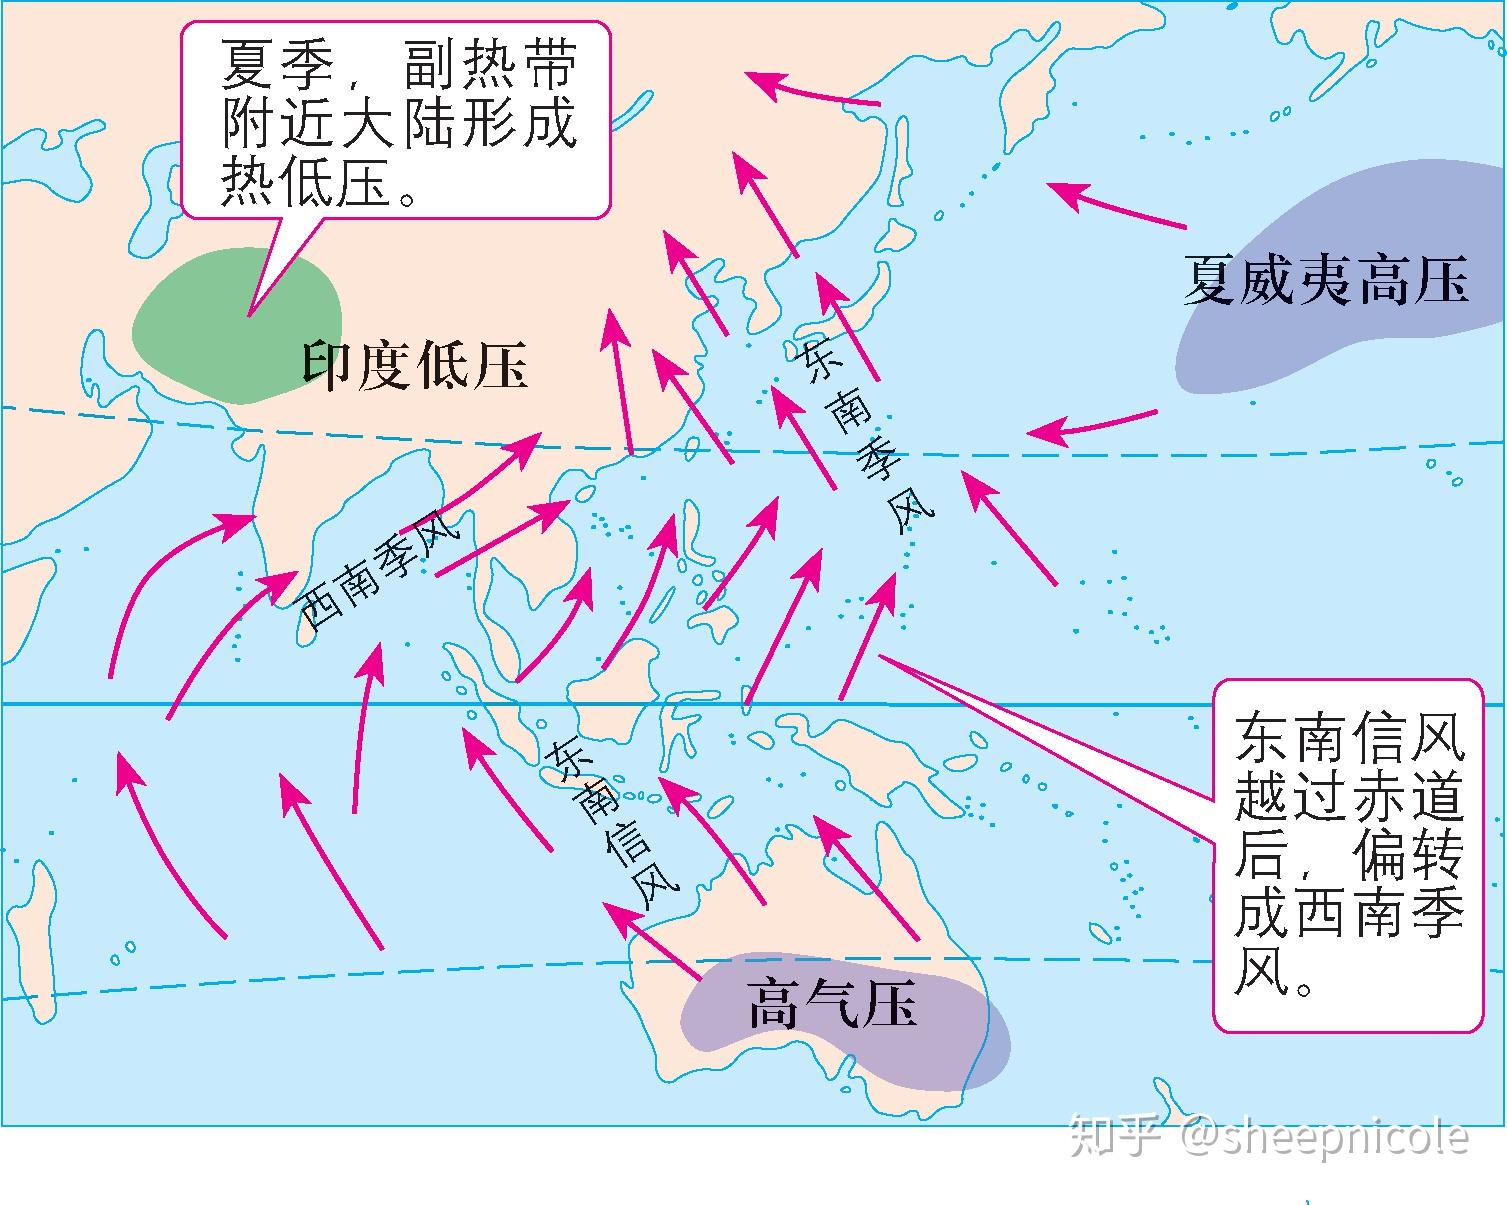 亚洲季风示意图及解释图片